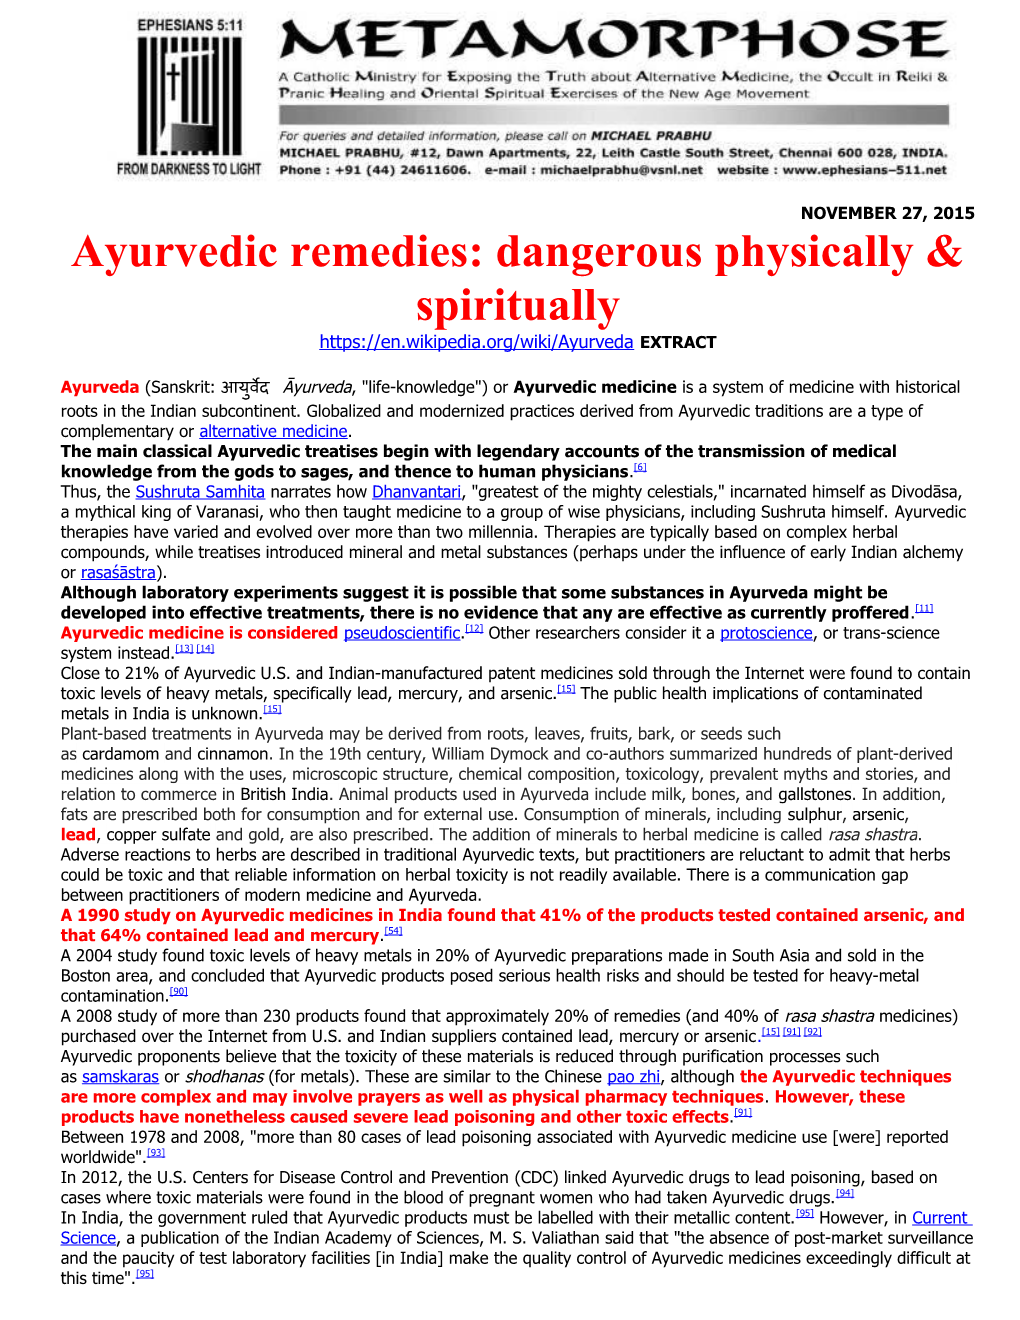 Ayurvedic Remedies: Dangerous Physically & Spiritually